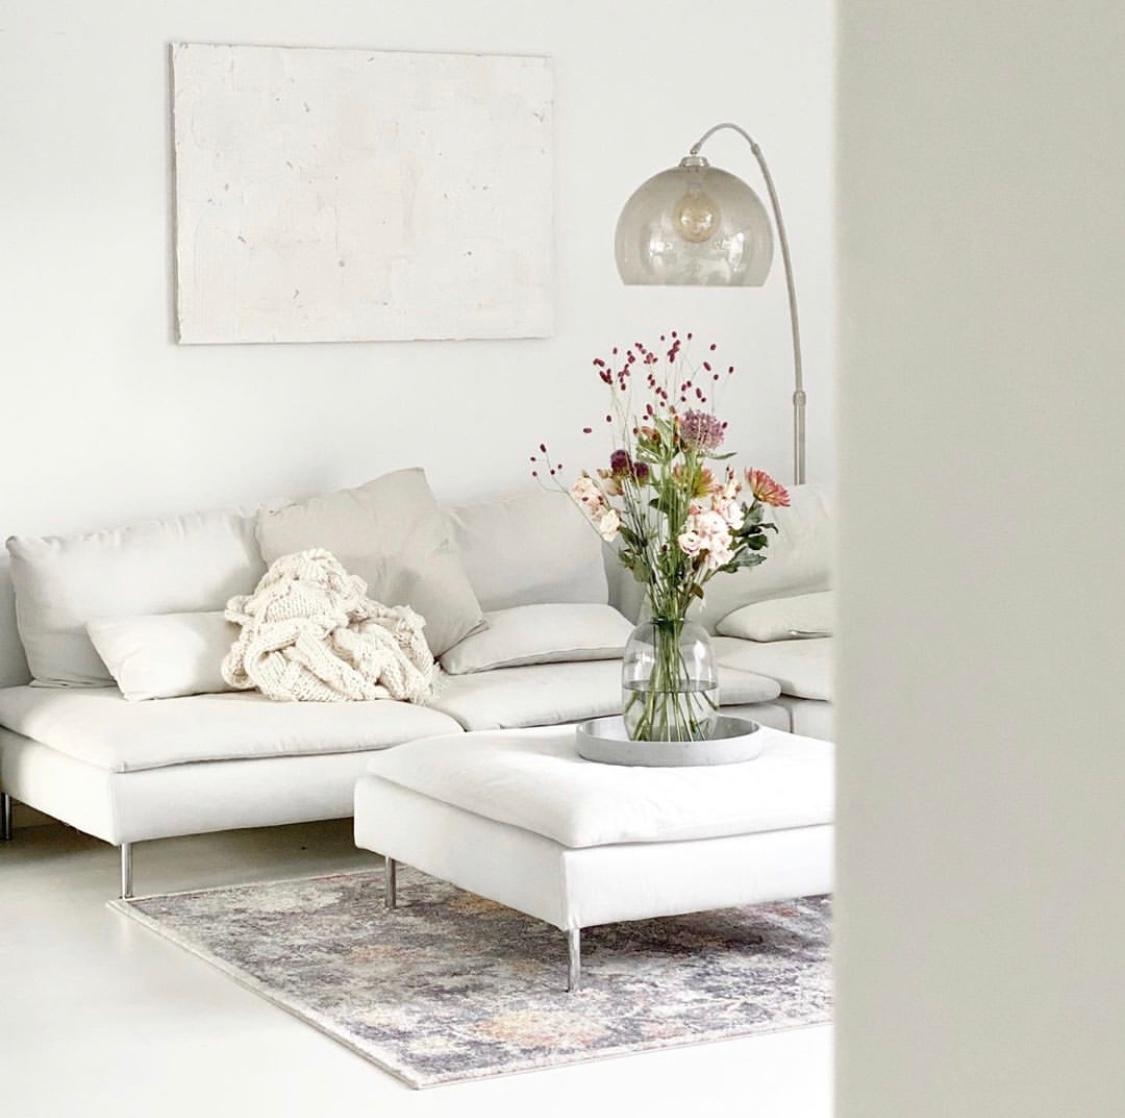 Im #Wohnzimmer mögen wir es hell und #minimalistisch. Frische Blumen sind hier der perfekte Farbtupfer!